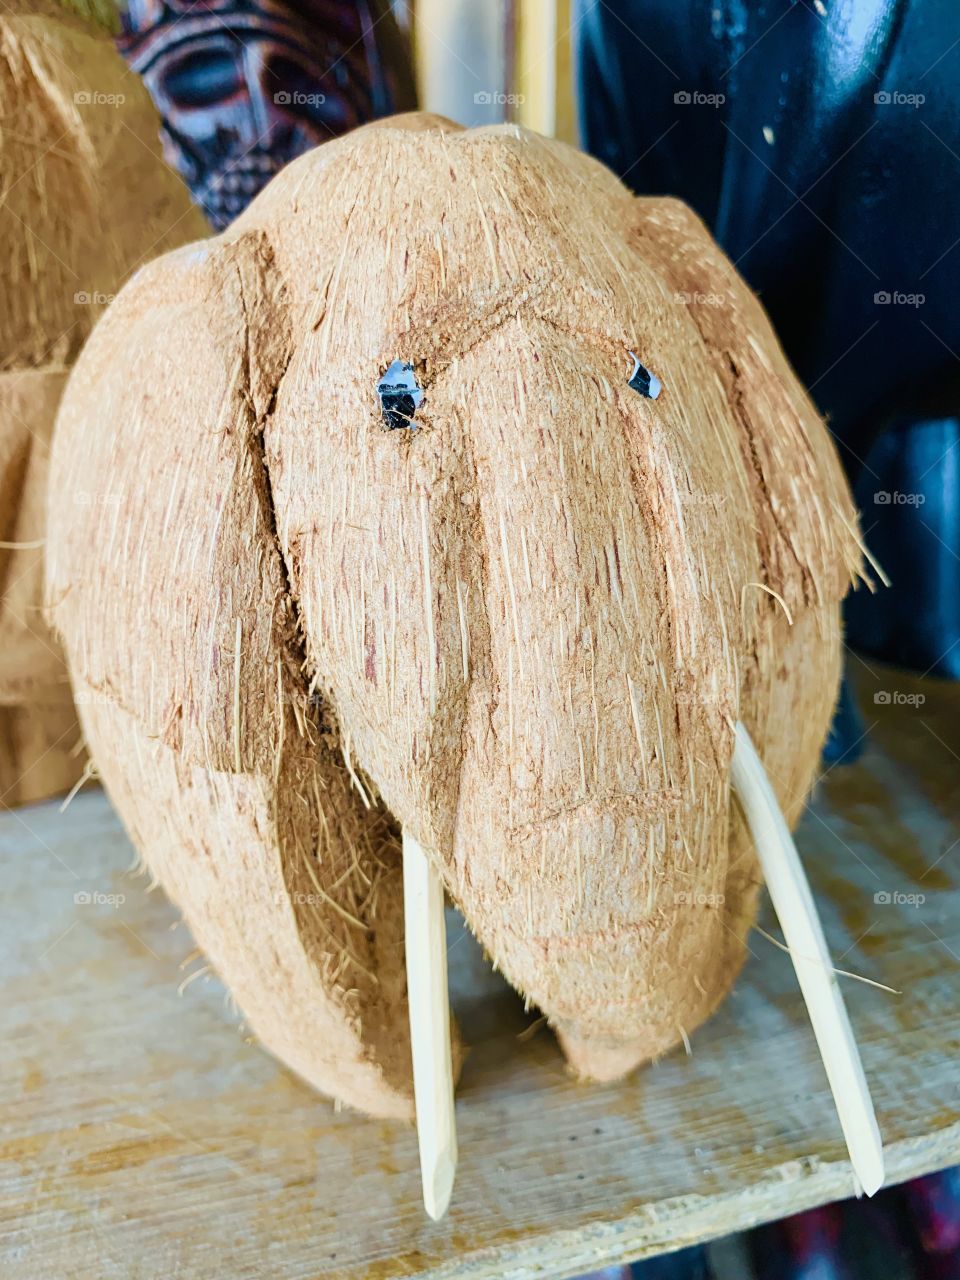 Elephant coconut